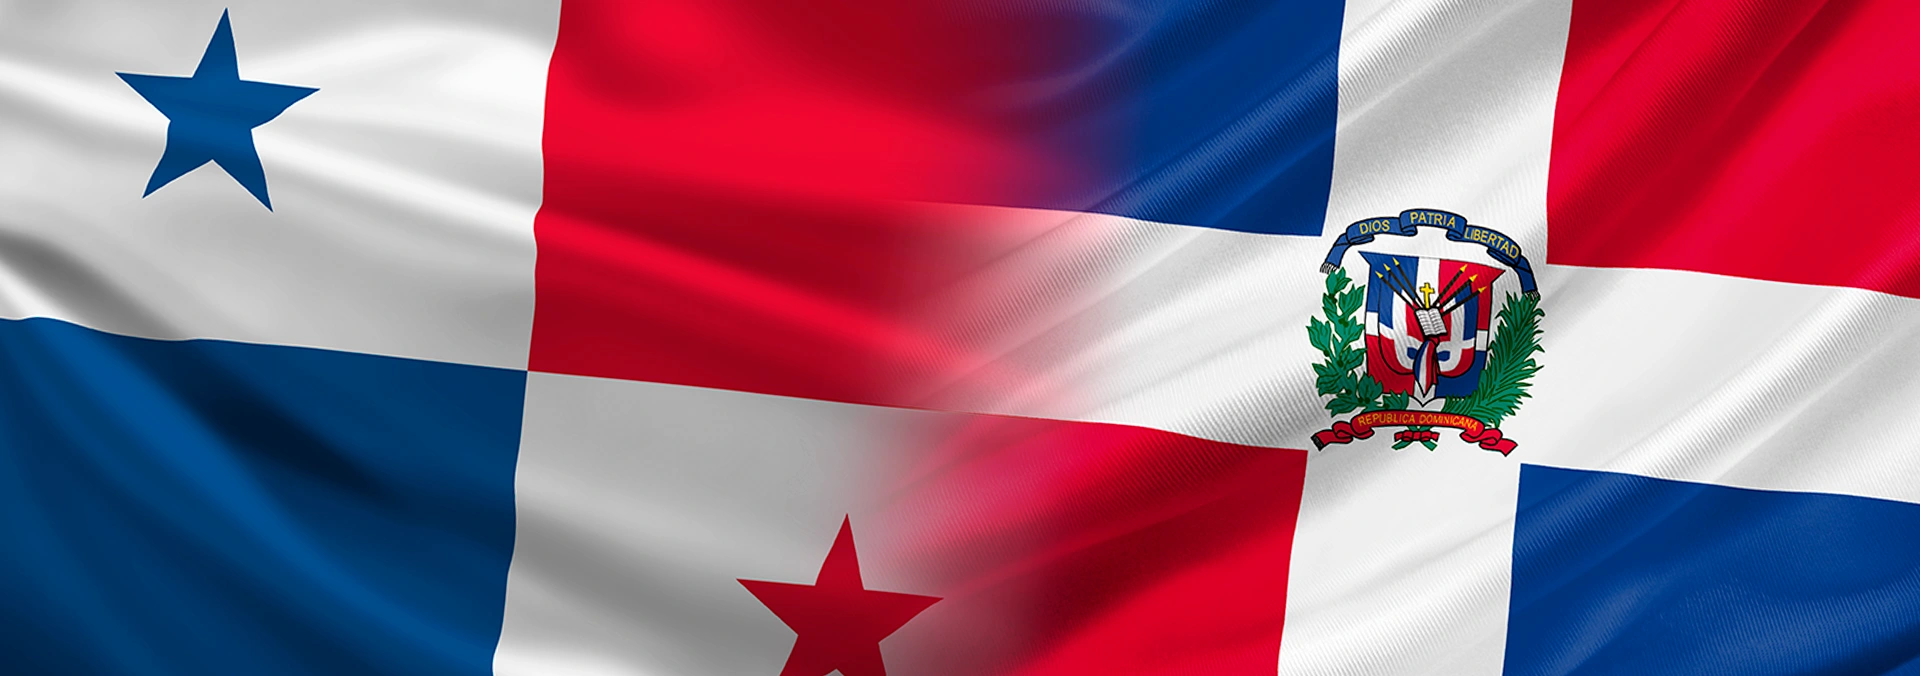 Nuproxa llega a Panamá y República Dominicana